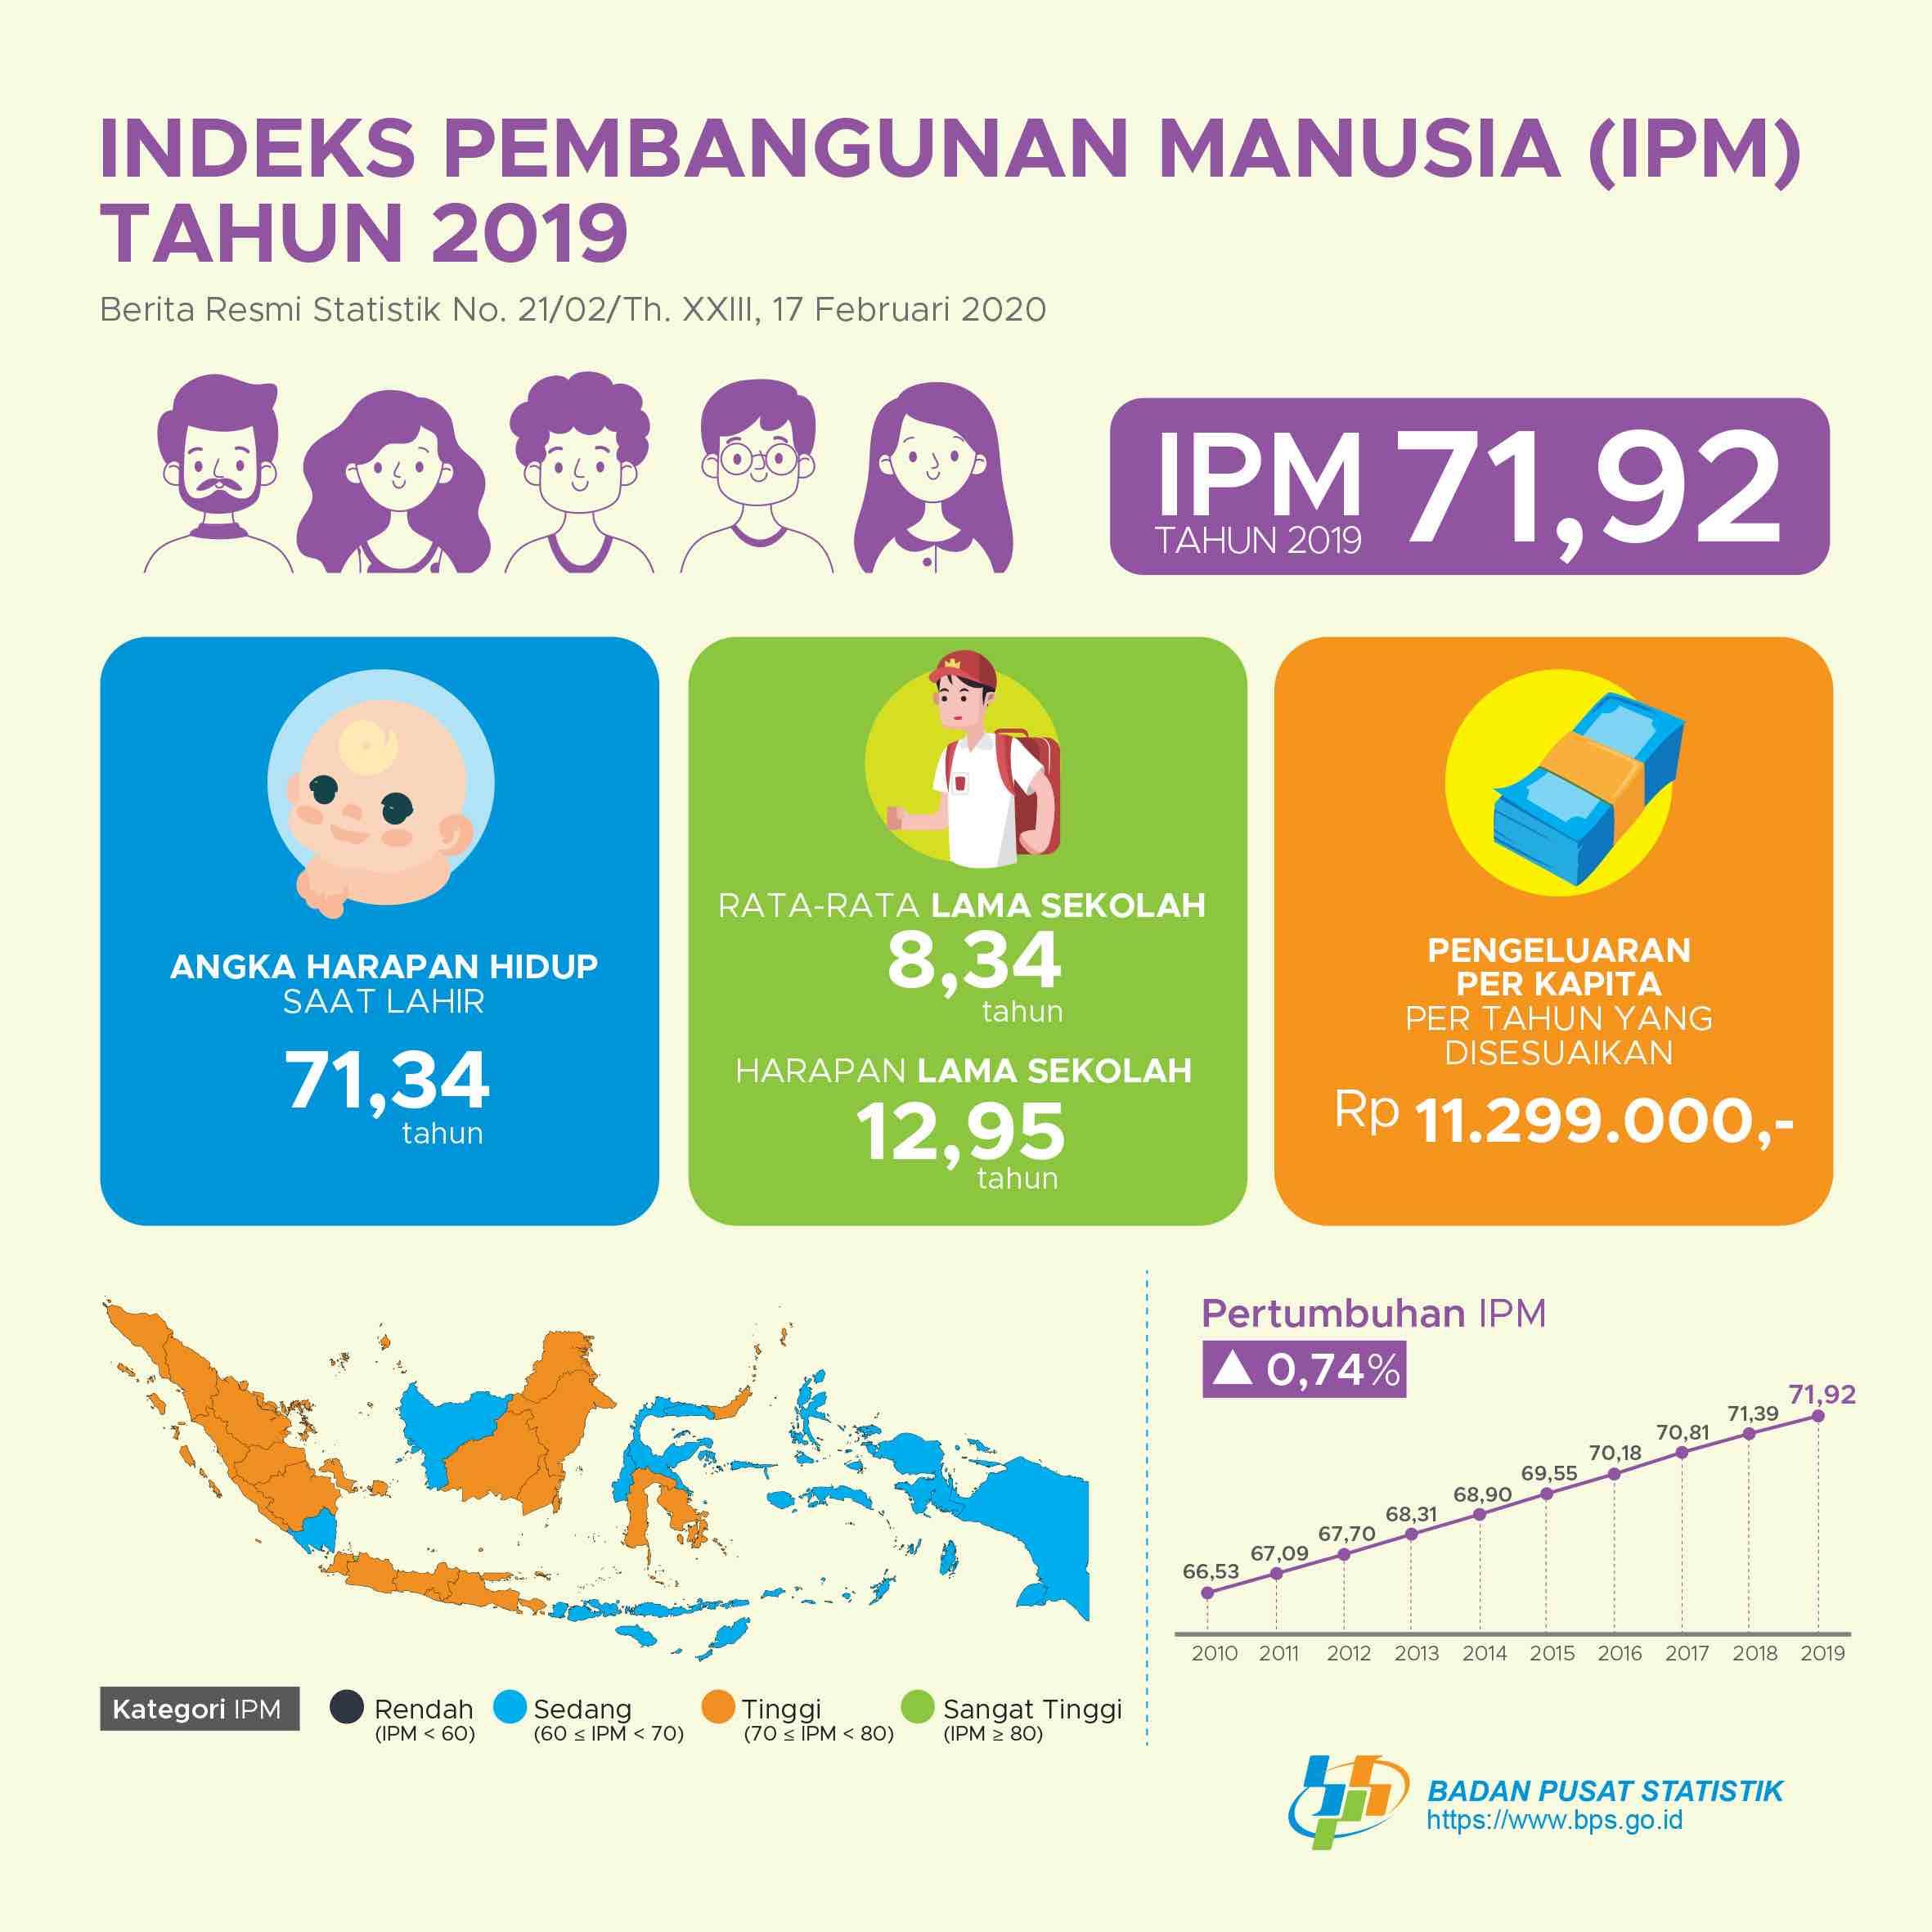 Indeks Pembangunan Manusia (IPM) Indonesia pada tahun 2019 mencapai 71,92